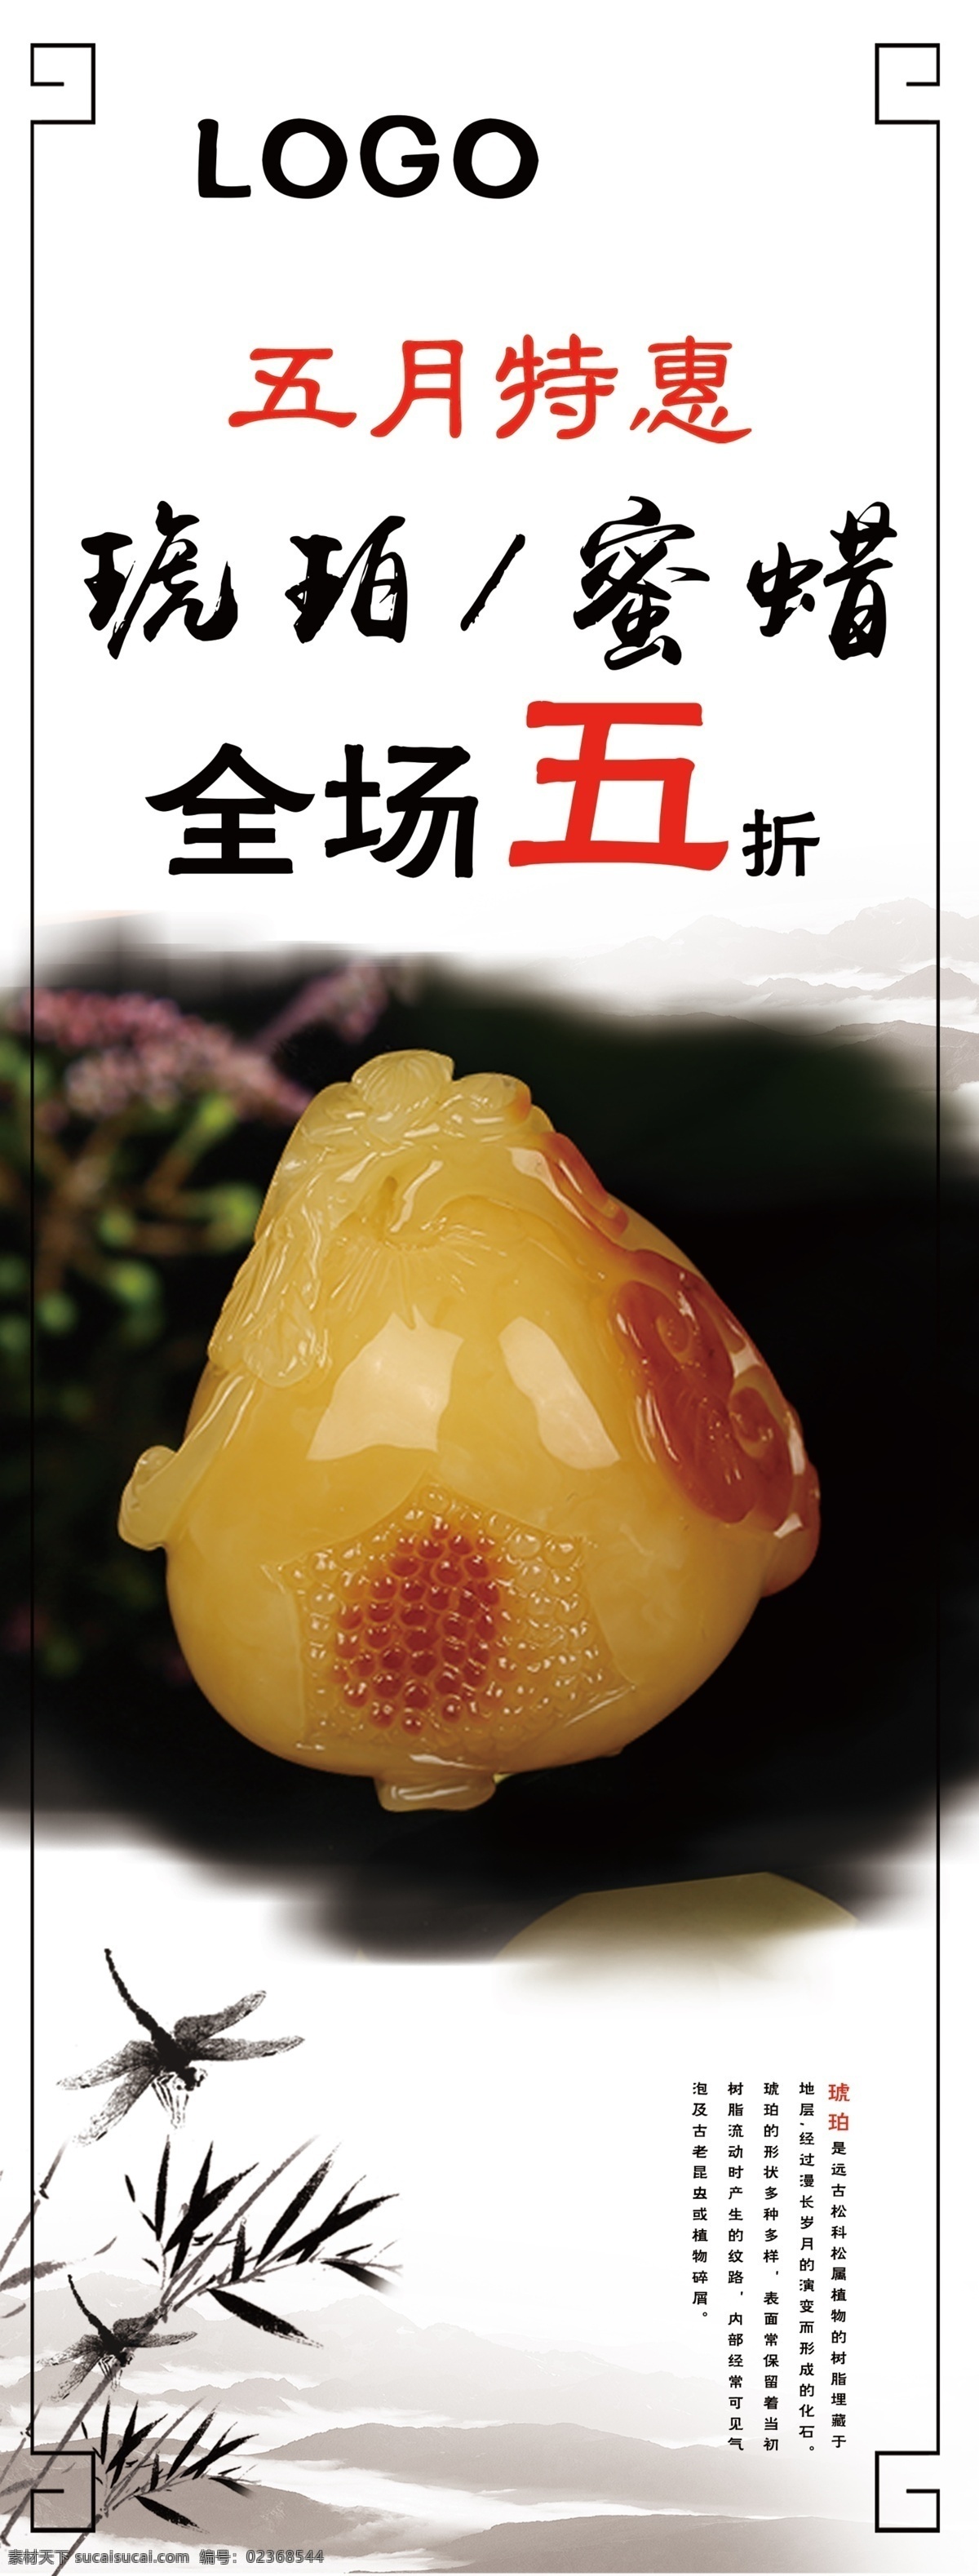 蜜蜡琥珀展架 蜜蜡 琥珀 展架 珠宝 中国风 广告